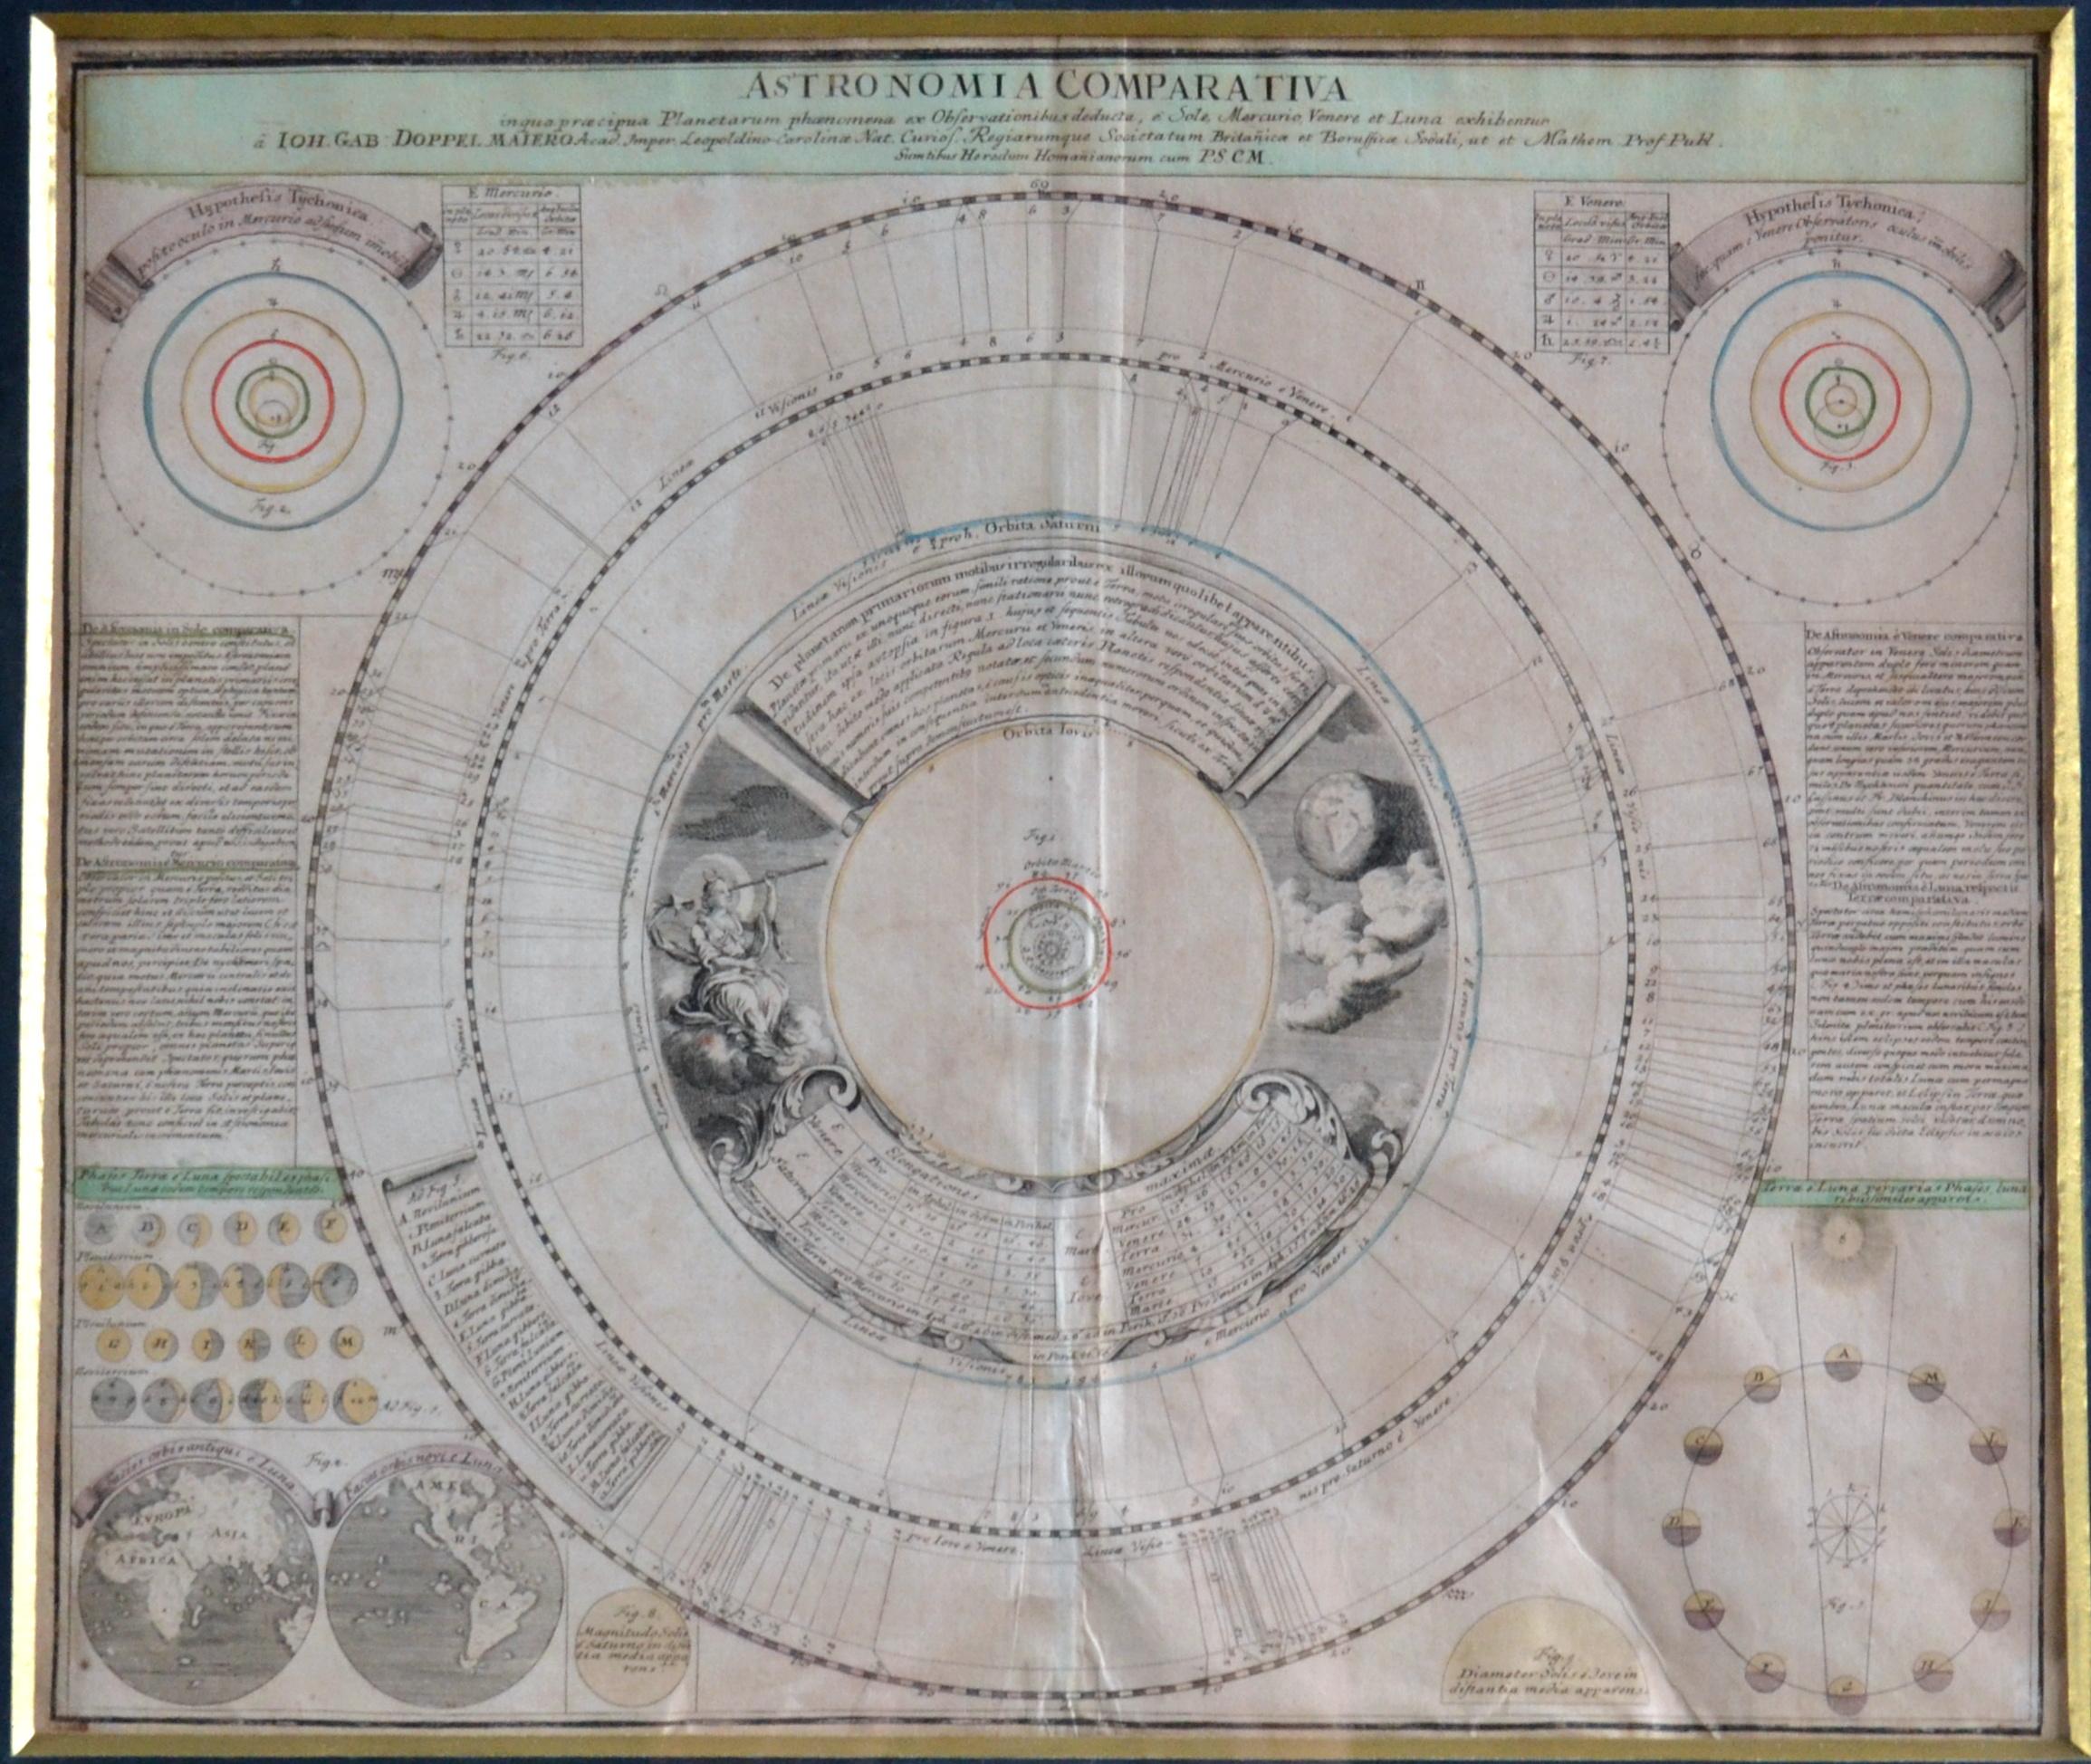 Sechs Original-Kupferstiche von Himmelskarten aus dem 18. Jahrhundert, herausgegeben von Homann. Doppelmayr ist der Kartograph, Astronom und Mathematiker. Von 1704 bis 1750 war er Professor für Mathematik am Aegidien-Gymnasium in Nürnberg. Als